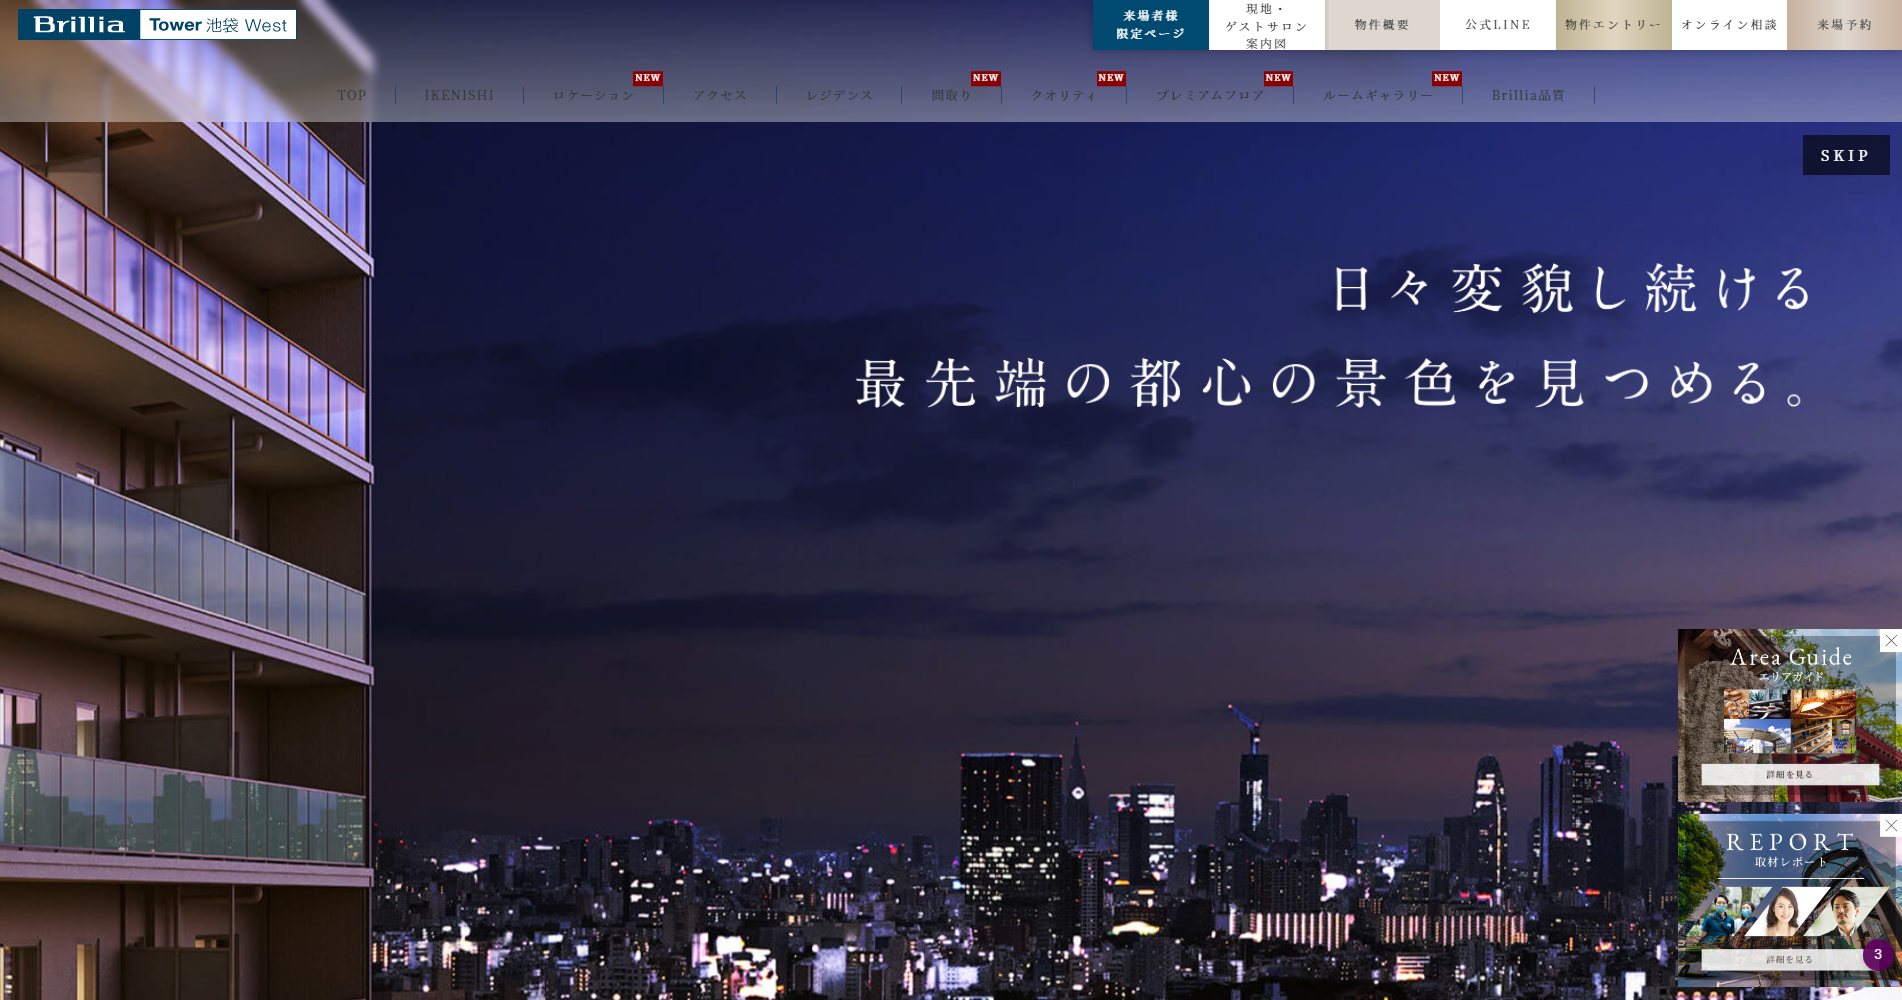 東京建物株式会社様　「brillia Tower 池袋 West」公式サイト